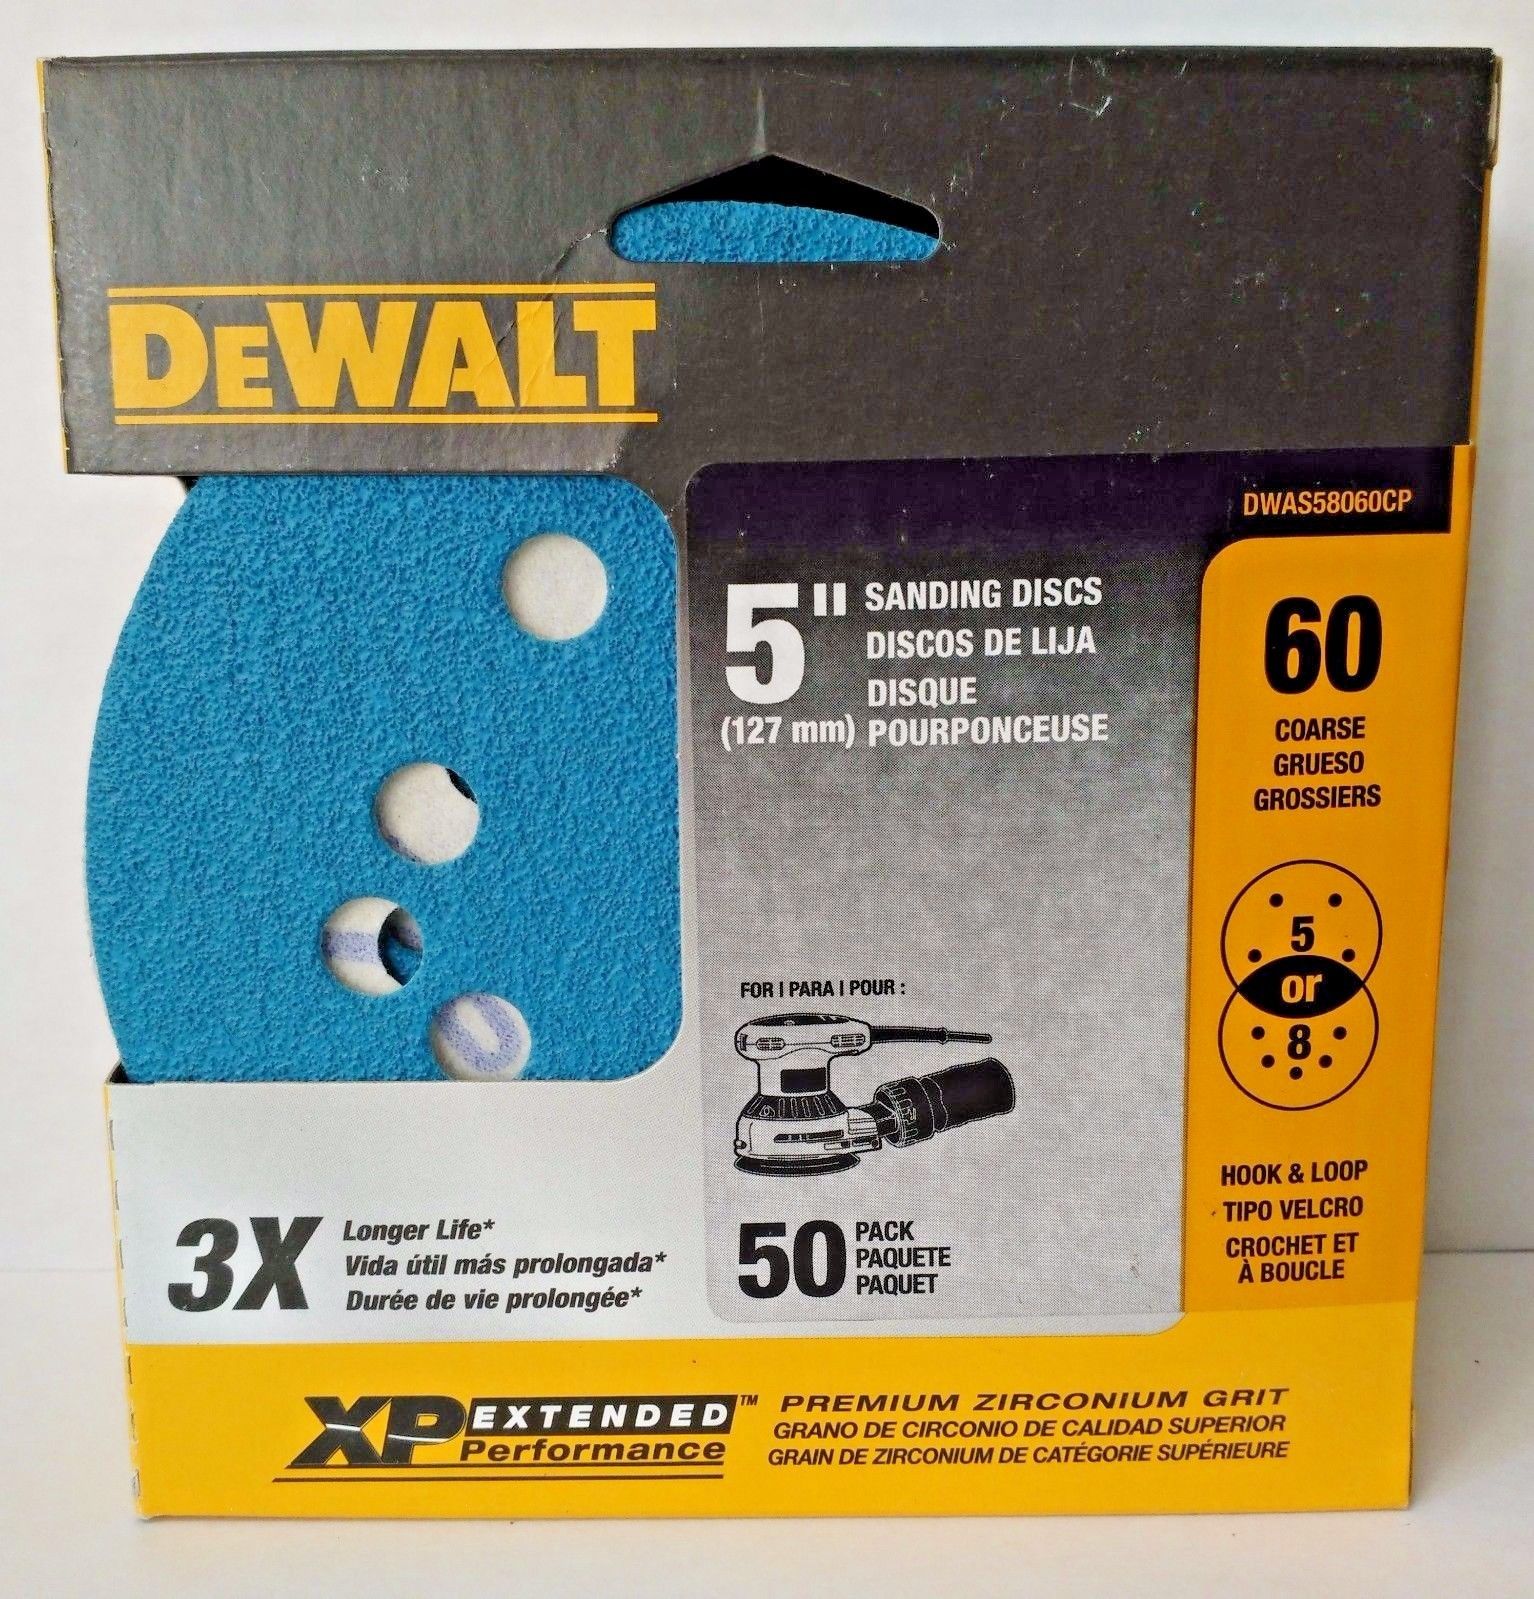 Dewalt DWAS58060CP 5" 60 Grit Zirconium Sanding Discs H&L 5 or 8 Hole 50 Pack